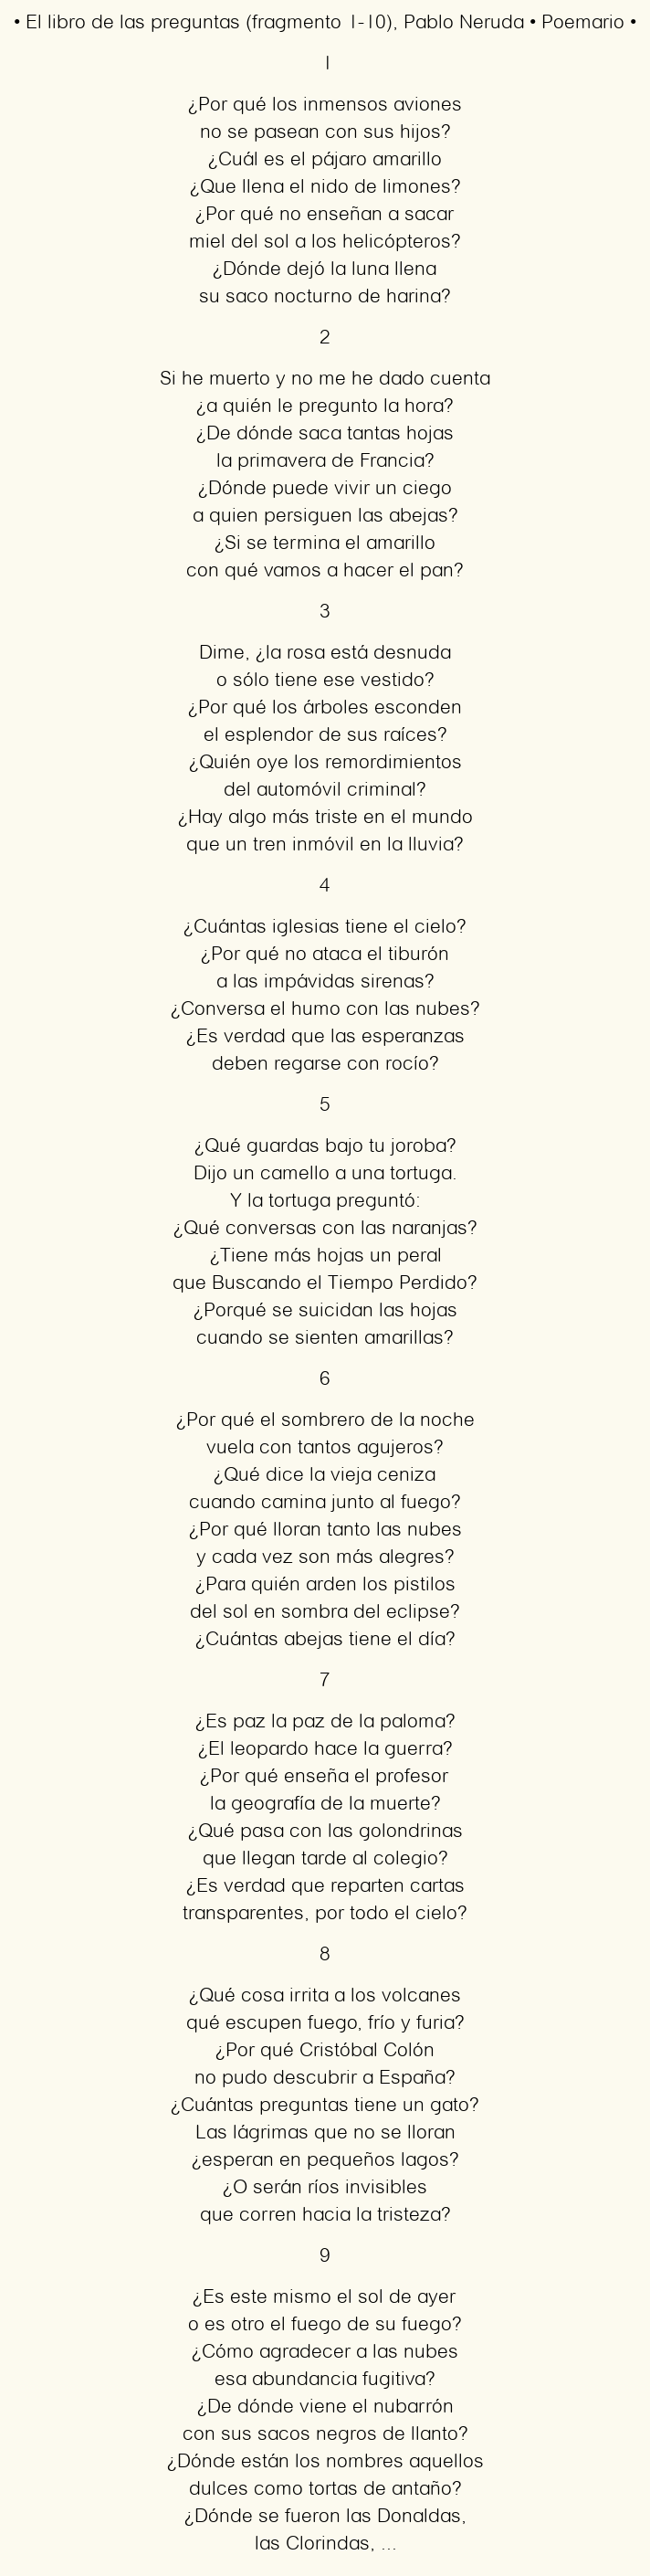 Imagen con el poema El libro de las preguntas (fragmento 1-10), por Pablo Neruda